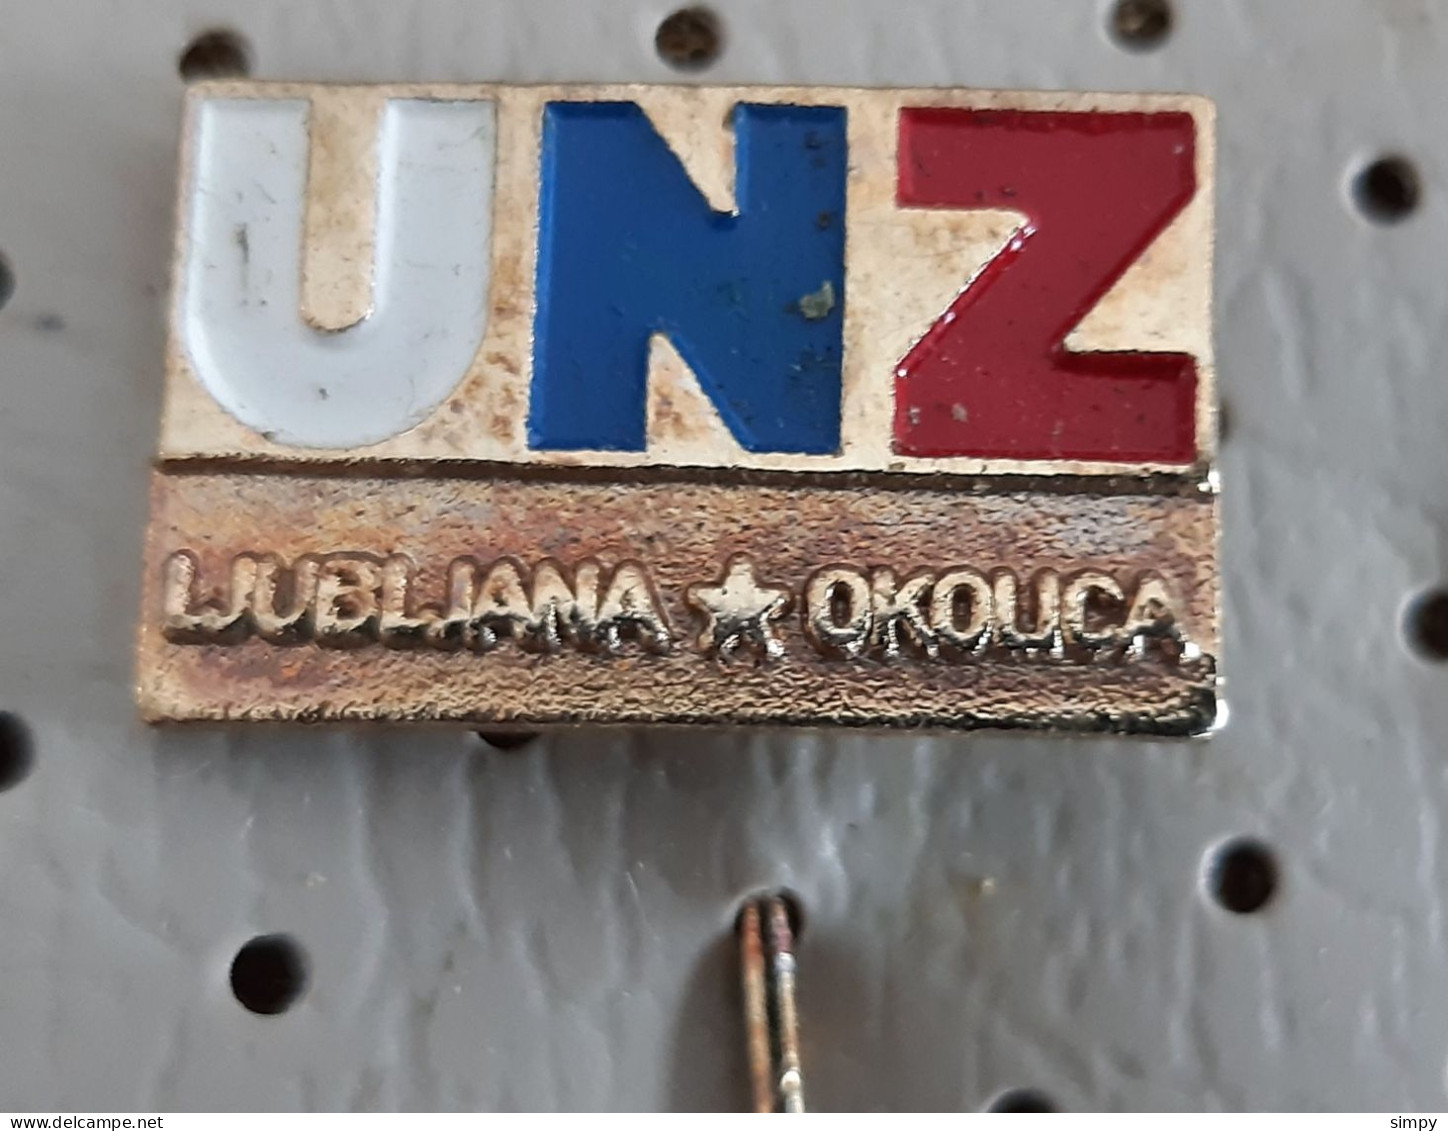 POLICE UNZ Ljubljana Okolica Uprava Za Notranje Zadeve Slovenia Ex Yugoslavia Vintage Pin - Police